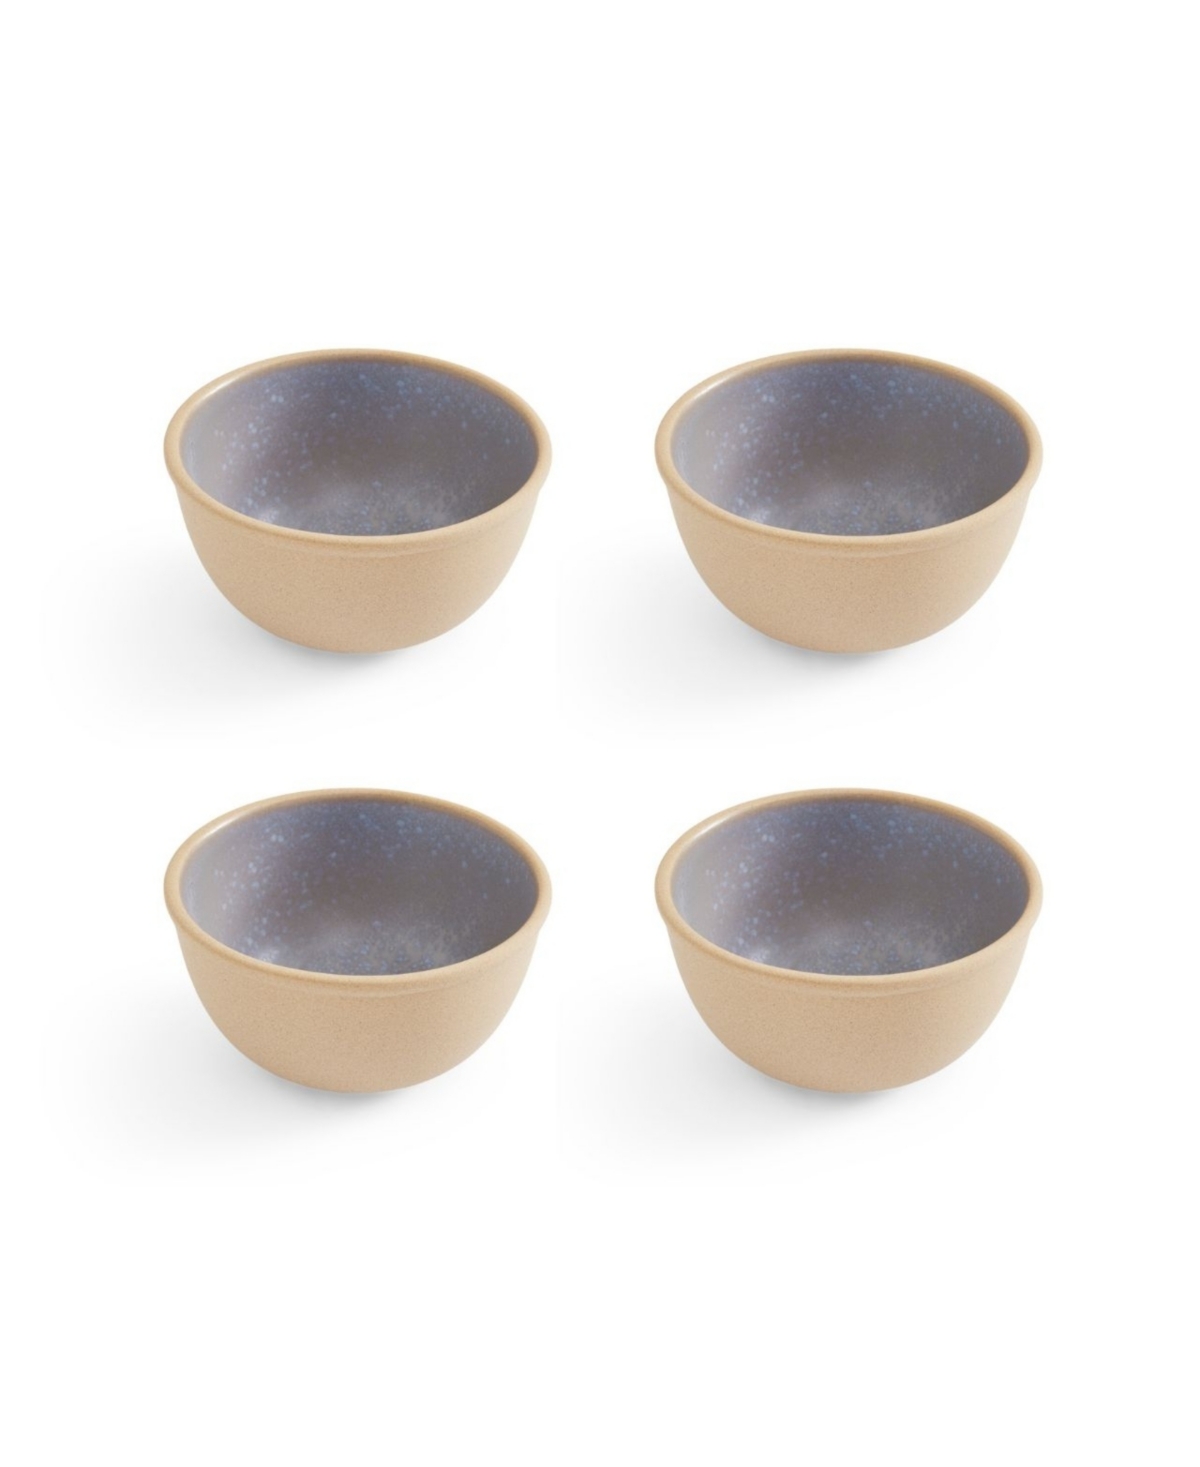 Minerals Small Bowls, Set of 4 - Aquamarine